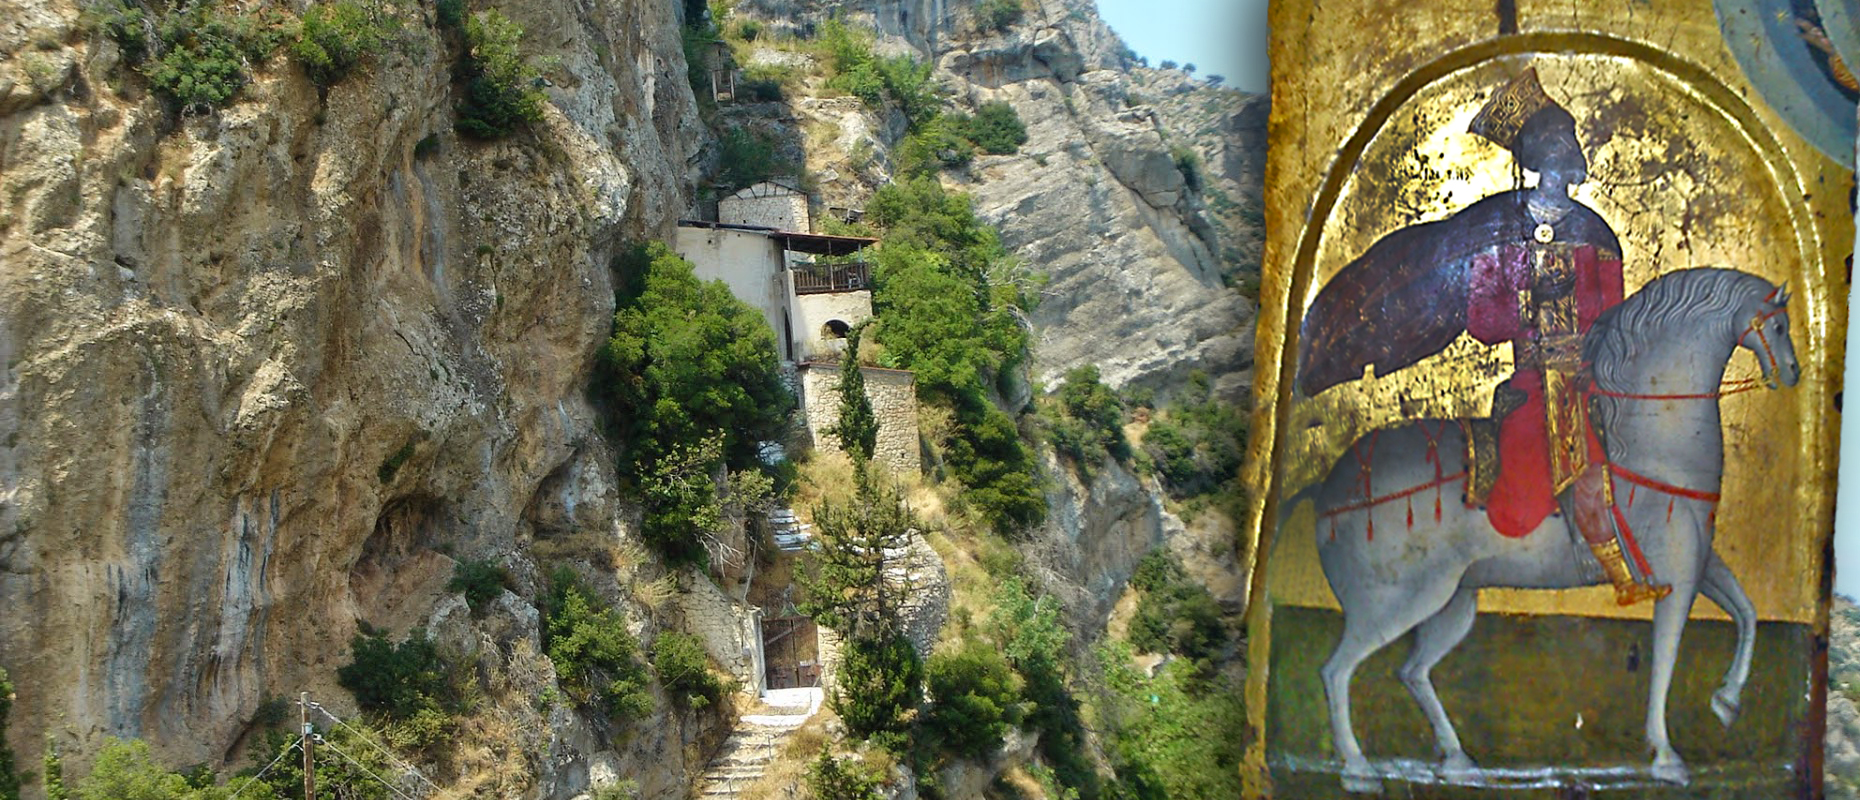 Ο Άγιος Κωνσταντίνος στο Γελήνι Κορινθίας. Το ιστορικό Μοναστήρι με τα σπάνια κειμήλια